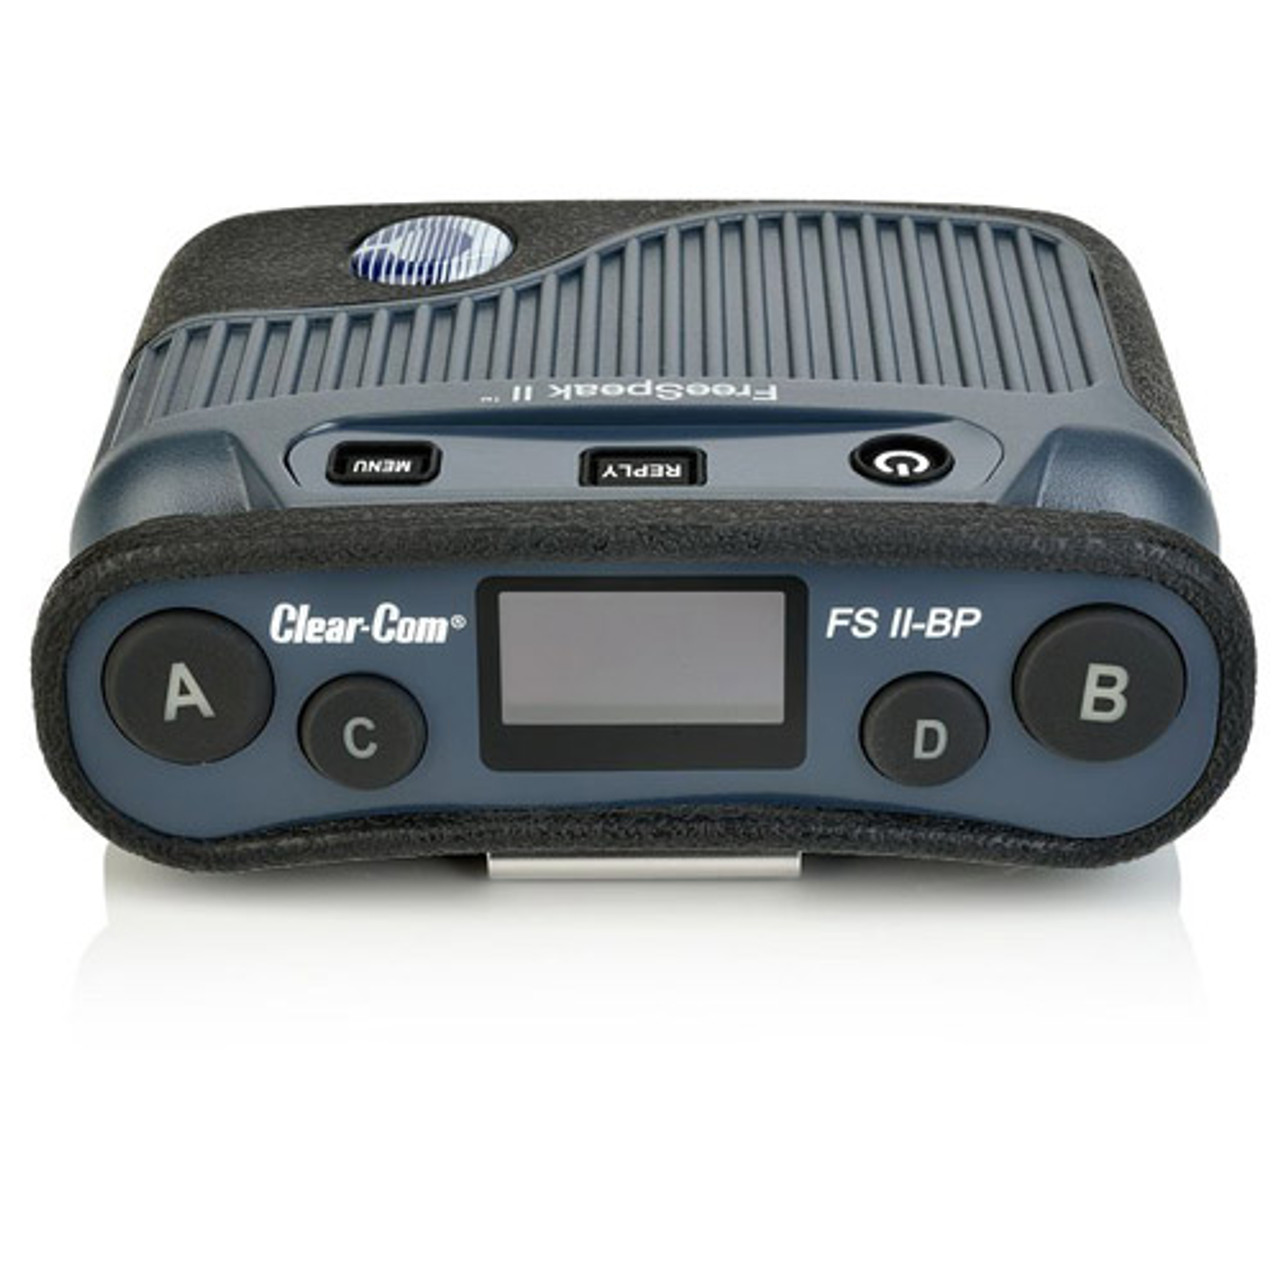 Clear-Com FreeSpeak II 1.9GHz Digital Wireless Belt Pack with Li-Ion battery